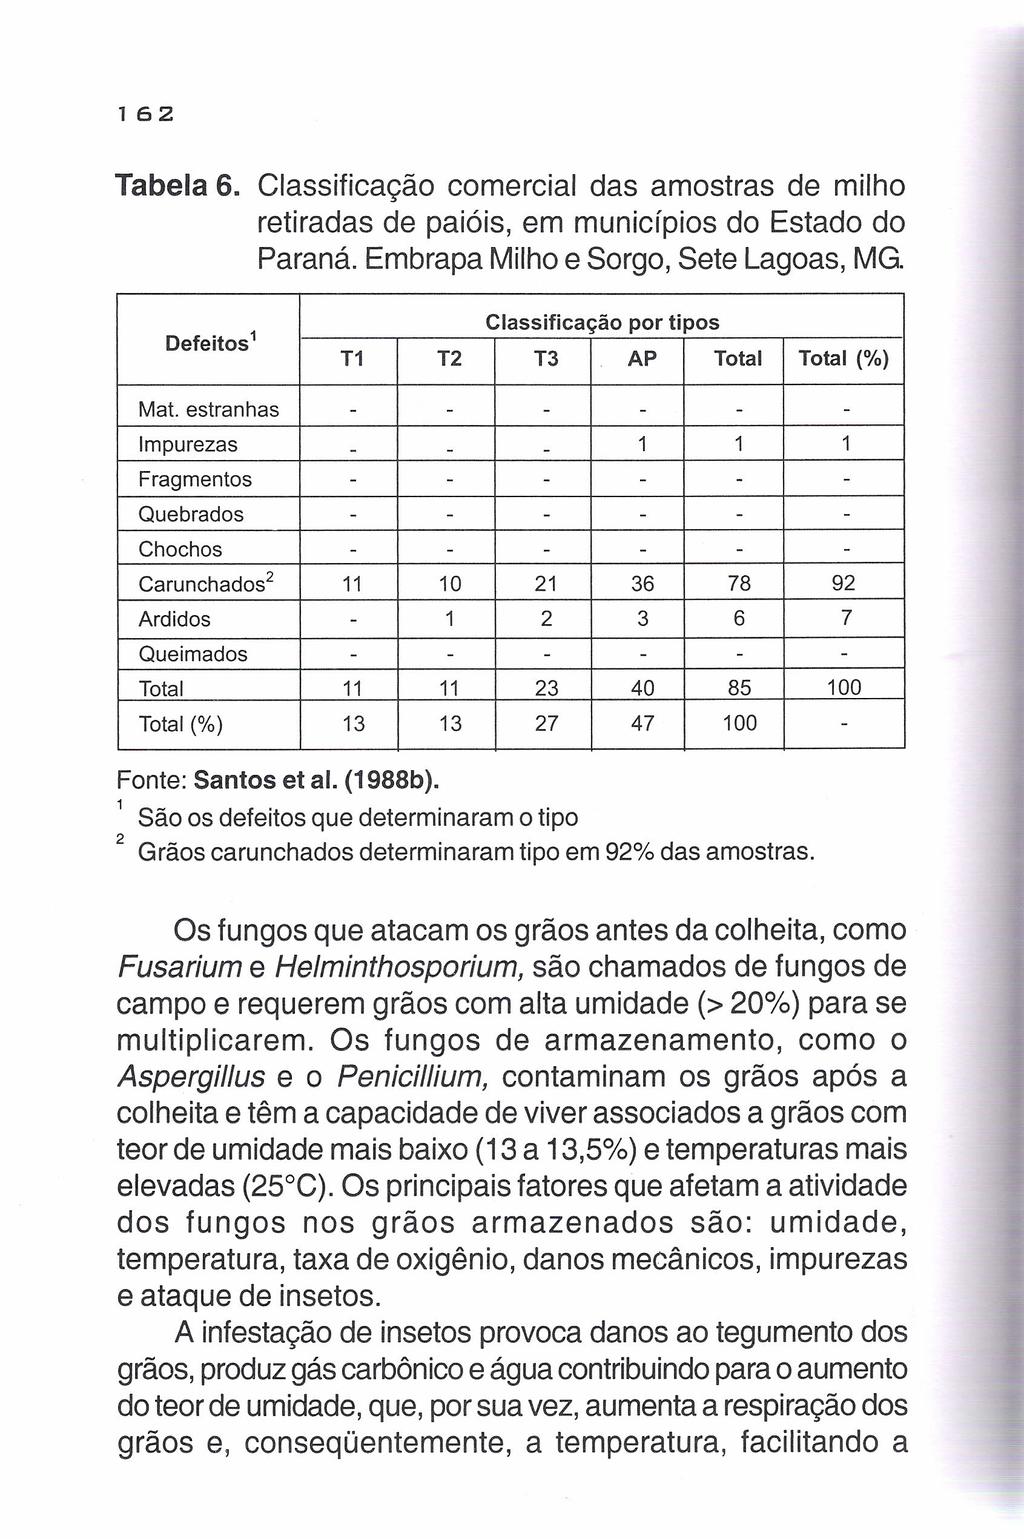 162 Tabela 6. Classificação comercial das amostras de milho retiradas de paióis, em municípios do Estado do Paraná. Embrapa Milho e Sorgo, Sete Lagoas, MG.